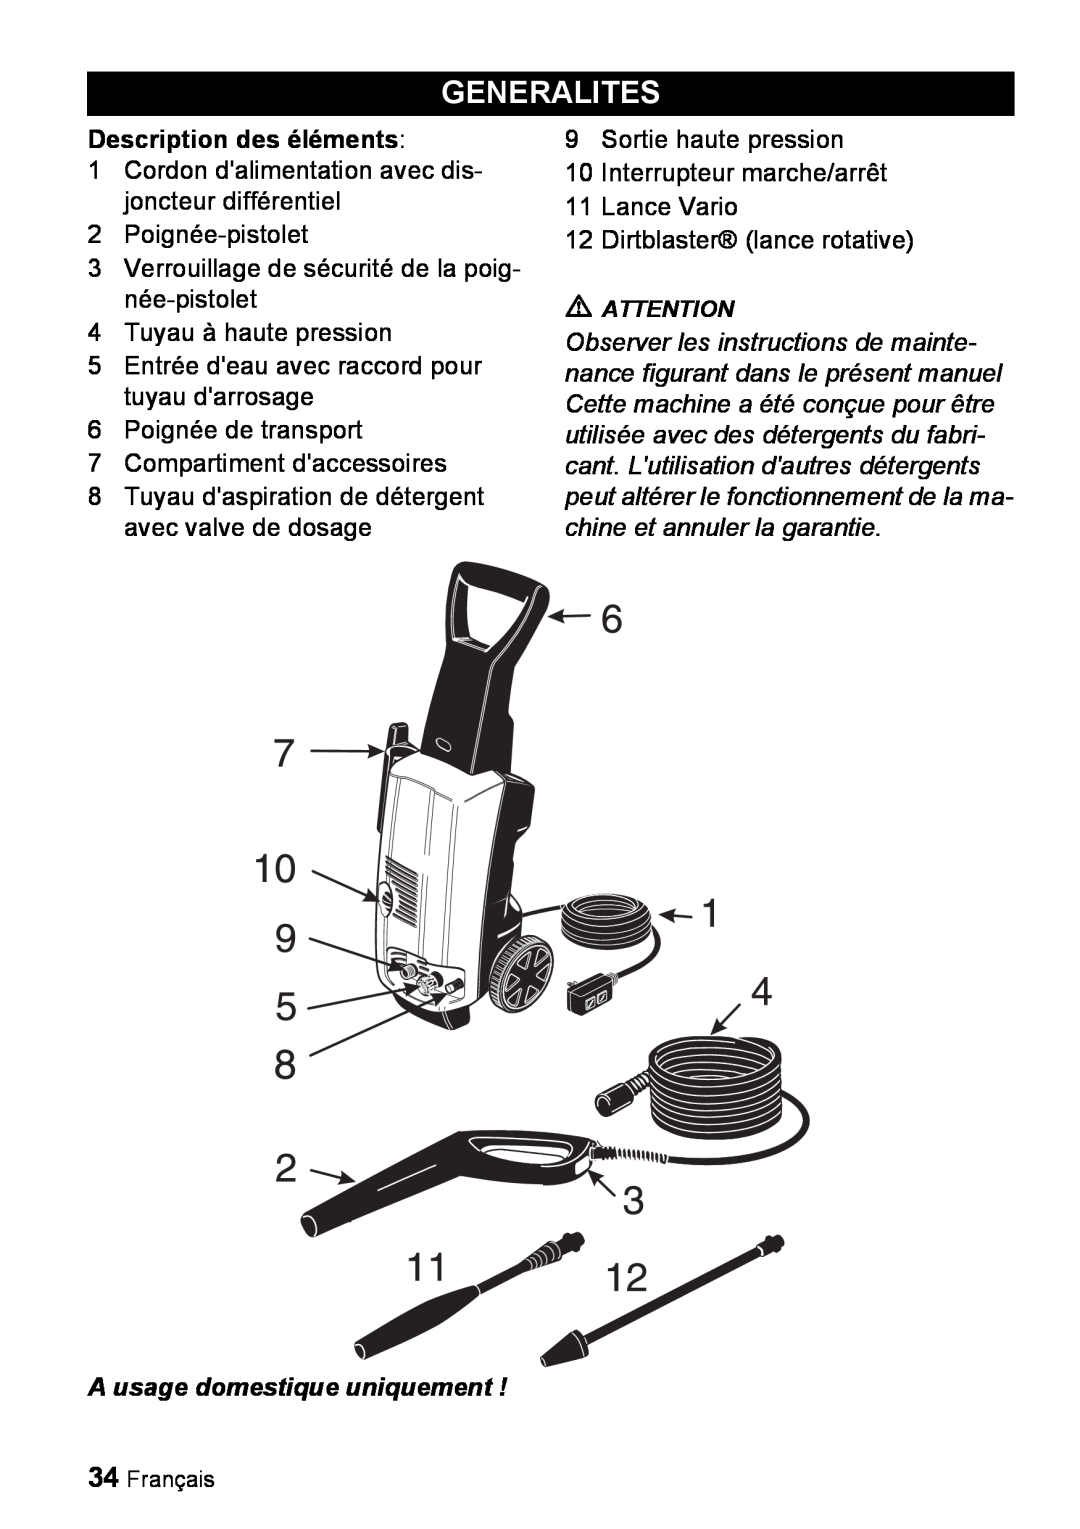 Karcher K 3.99M manual Generalites, Description des éléments, A usage domestique uniquement 